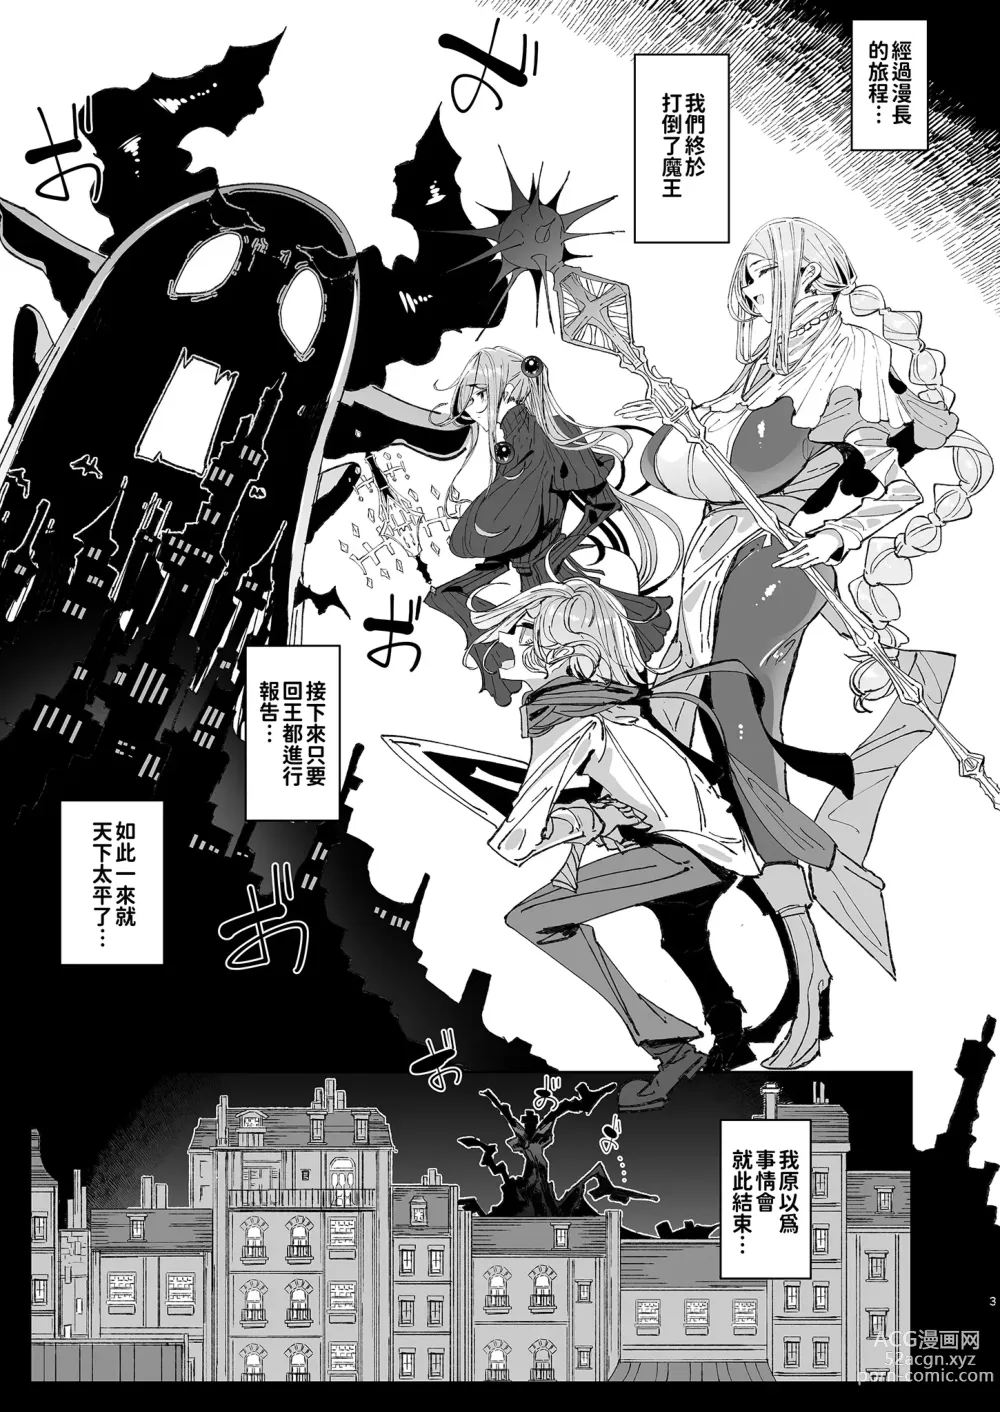 Page 3 of doujinshi 勇者和兩位扶她淫魔在討伐魔王後肯定要做那件事吧! (decensored)